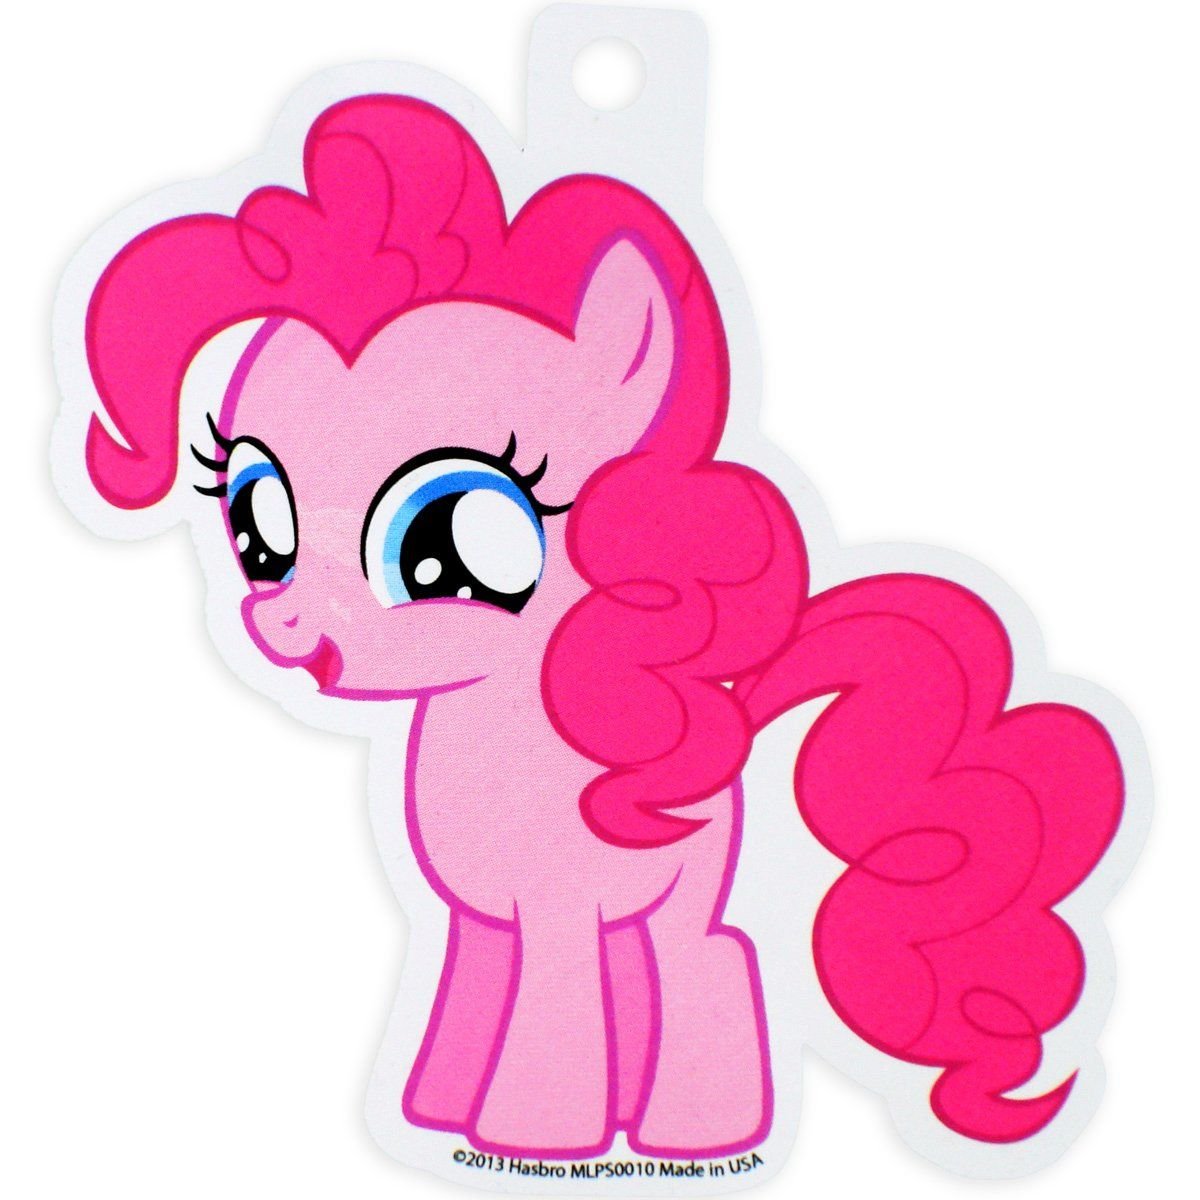 Little pony pinkie. My little Pony Пинки Пай. Пинки Пай 18. 2 Пинки Пай. Милые пони.